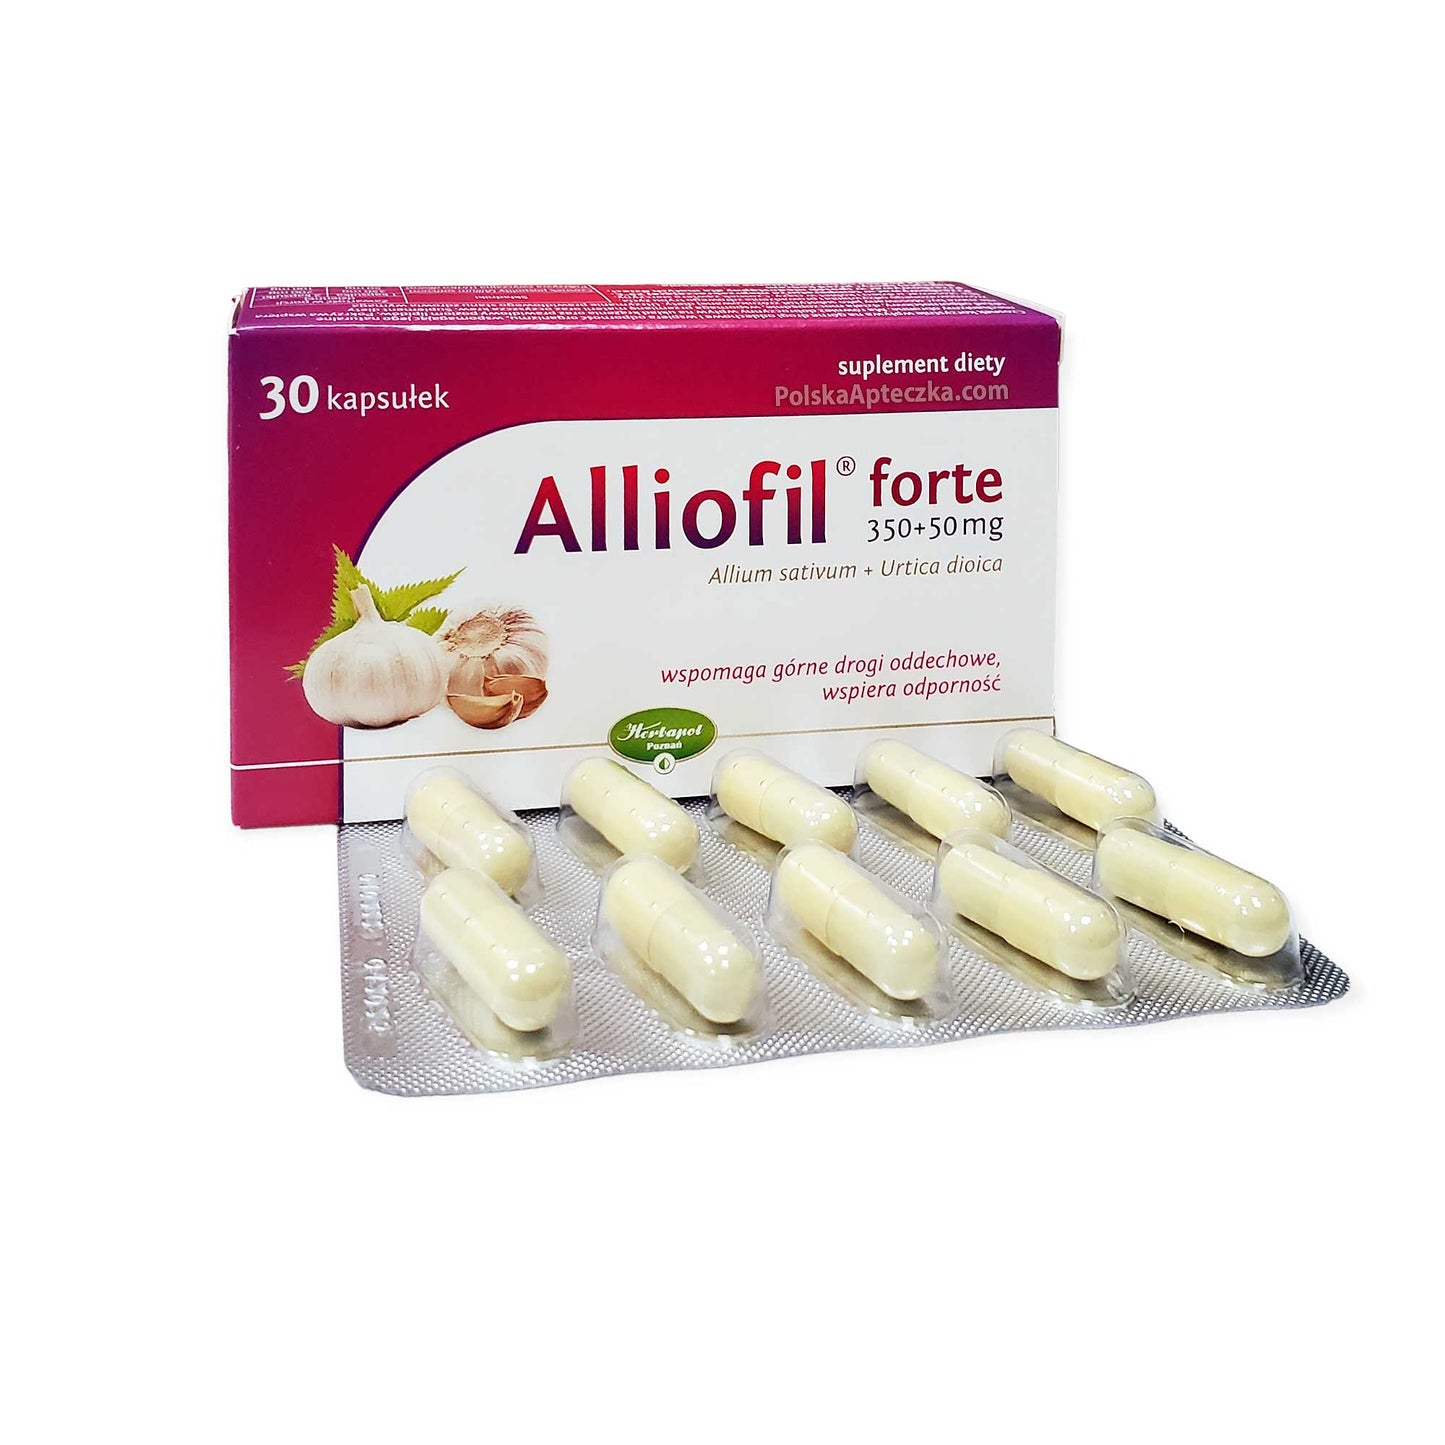 Alliofil forte capsules